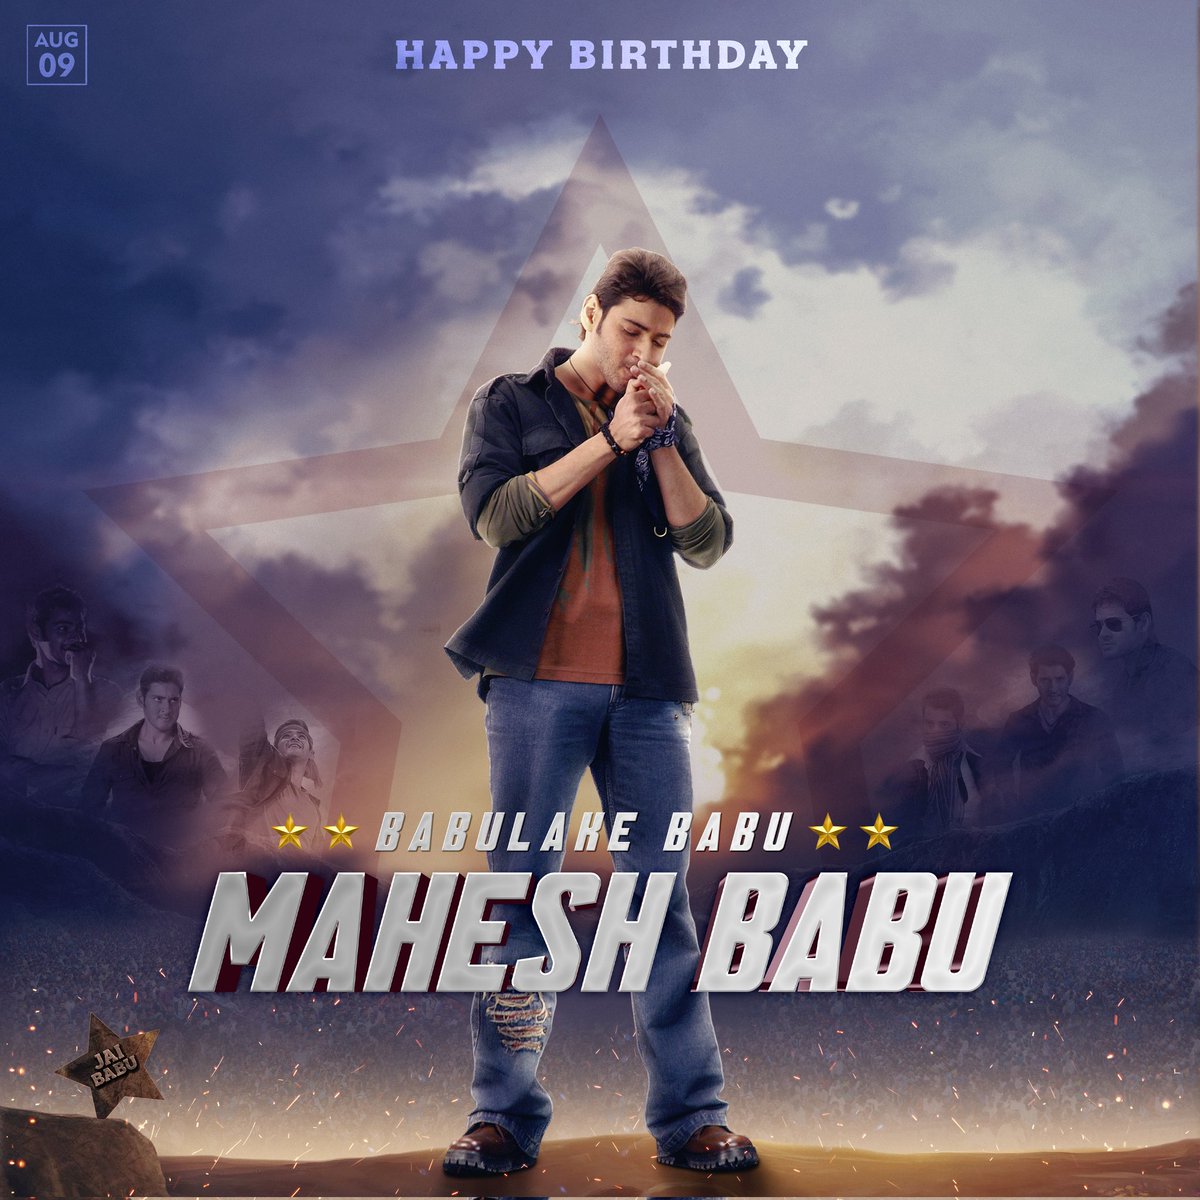 Gefeliciteerd met je verjaardag Mahesh Babu